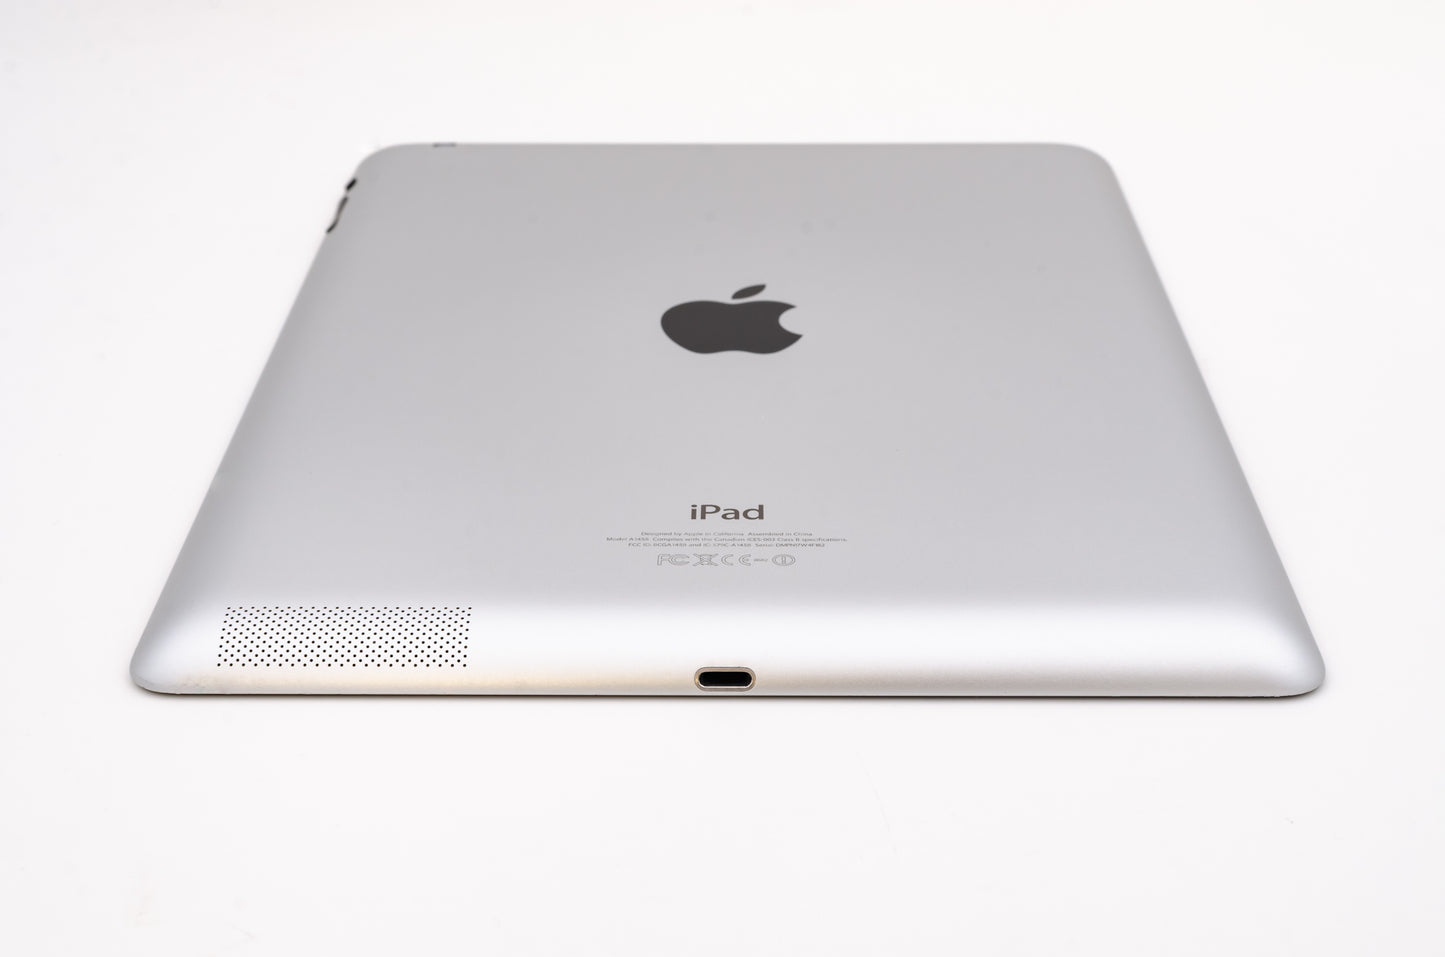 apple-2012-9.7-inch-ipad-4-a1459-silver/black-5